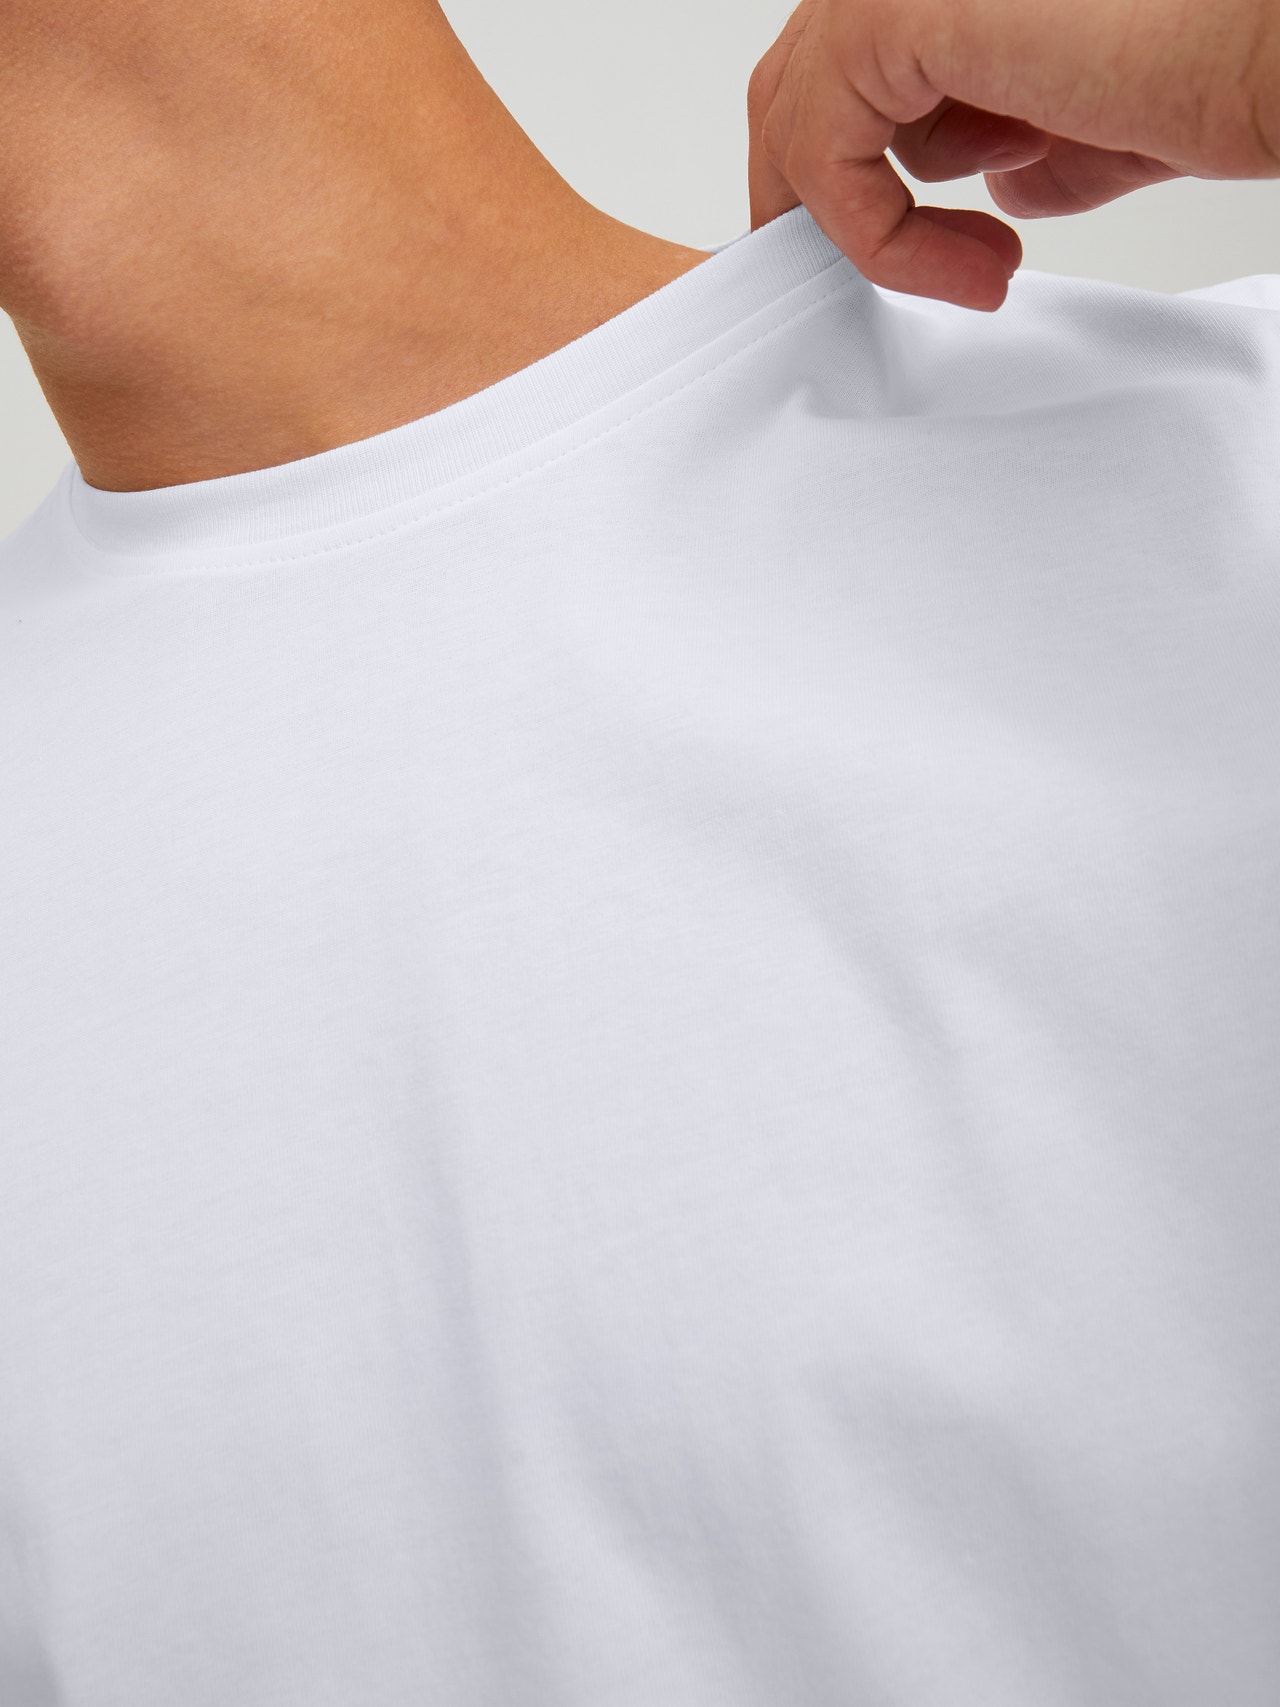 Jack & Jones Gedruckt Rundhals T-shirt -White - 12229431